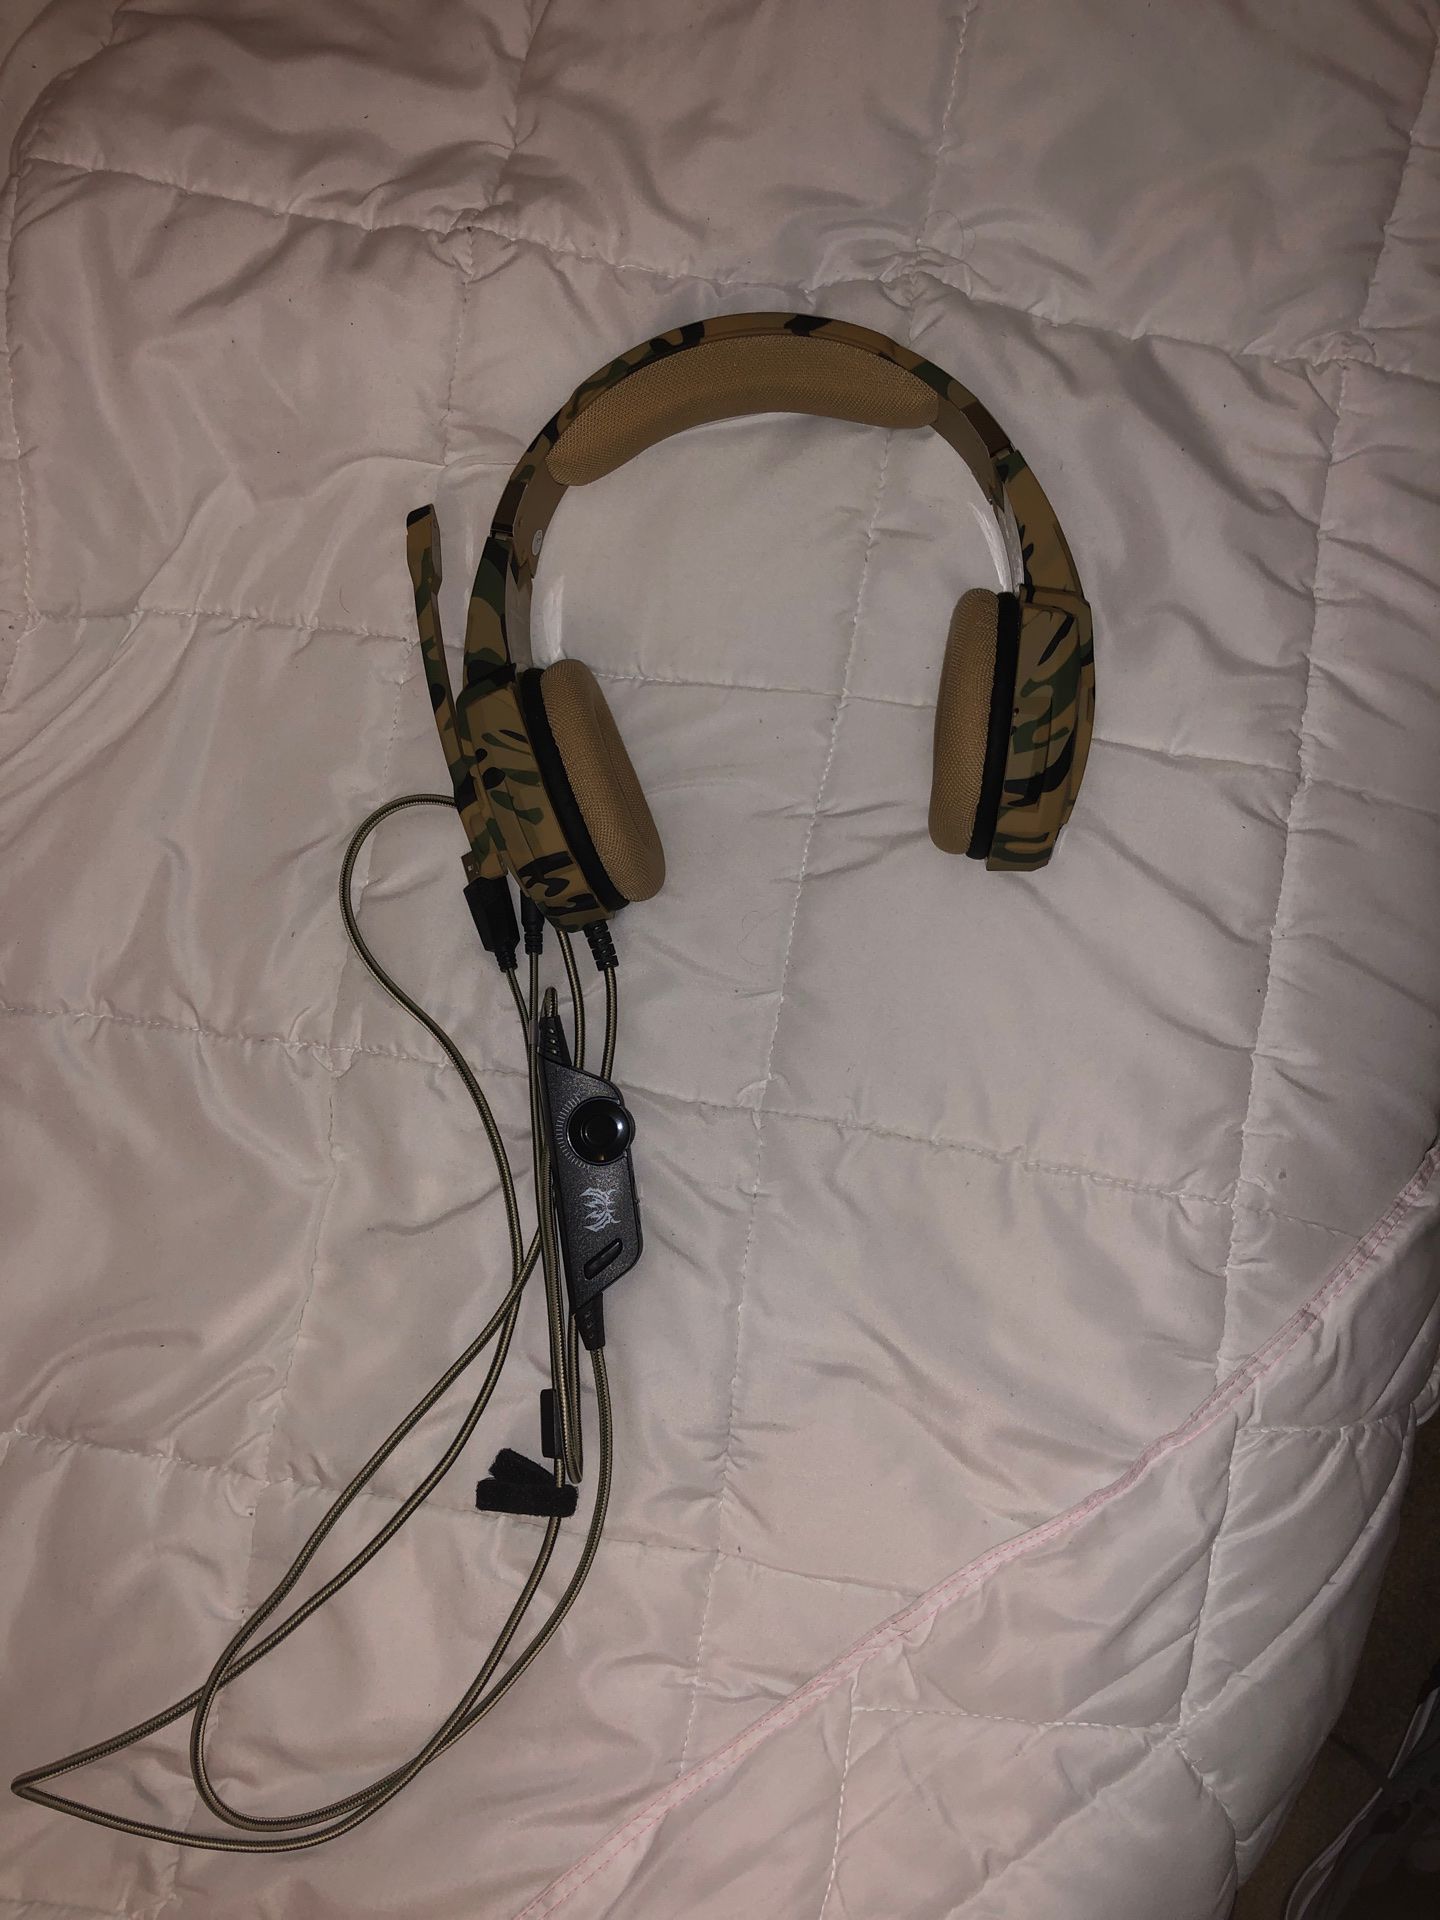 Gaming headset